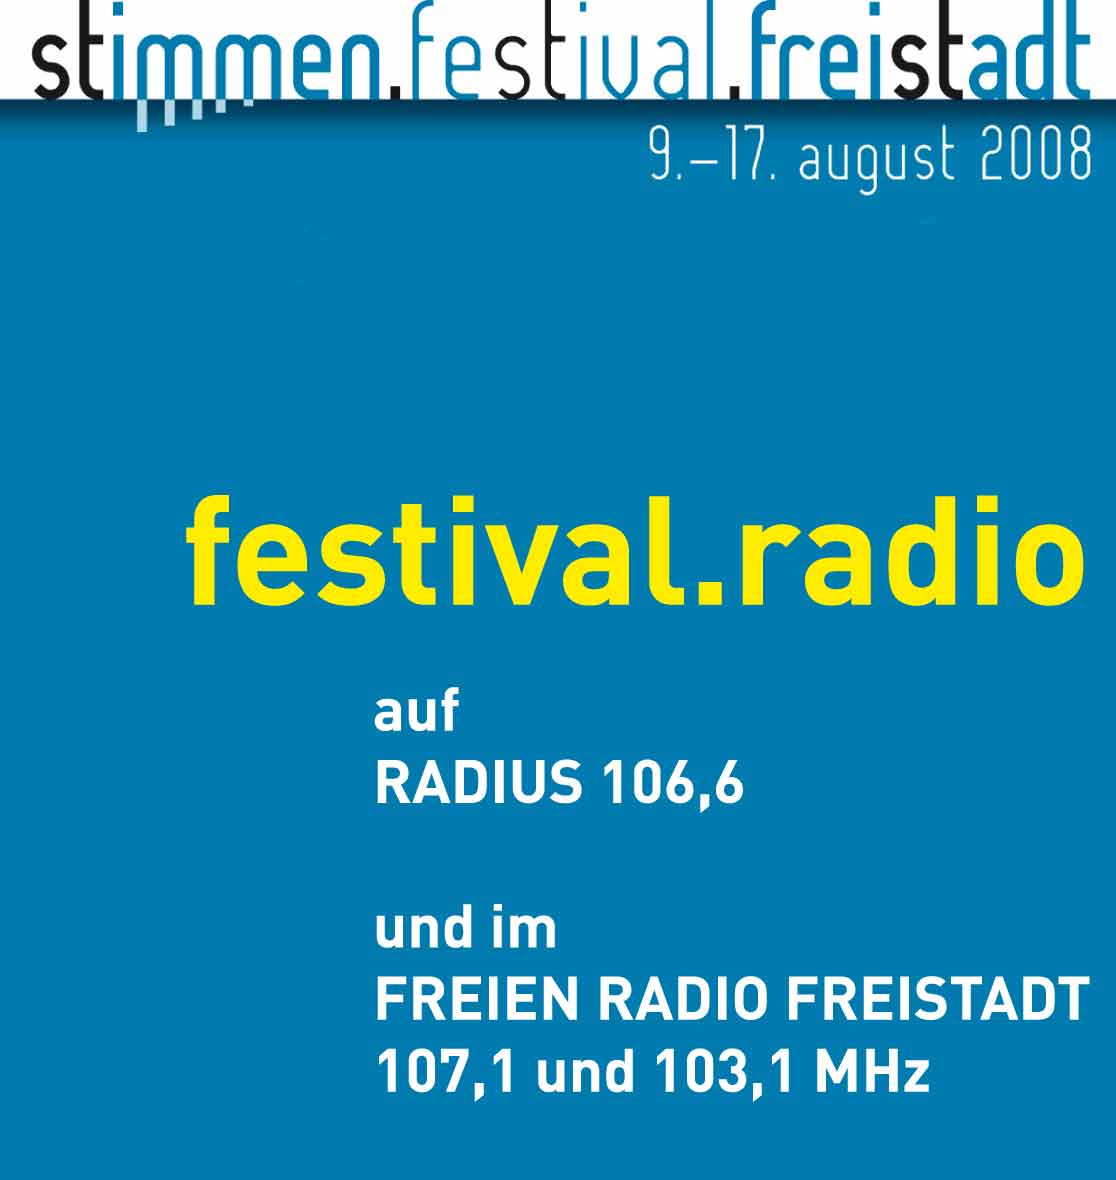 STIMMEN-FESTIVAL-FREISTADT im Radio